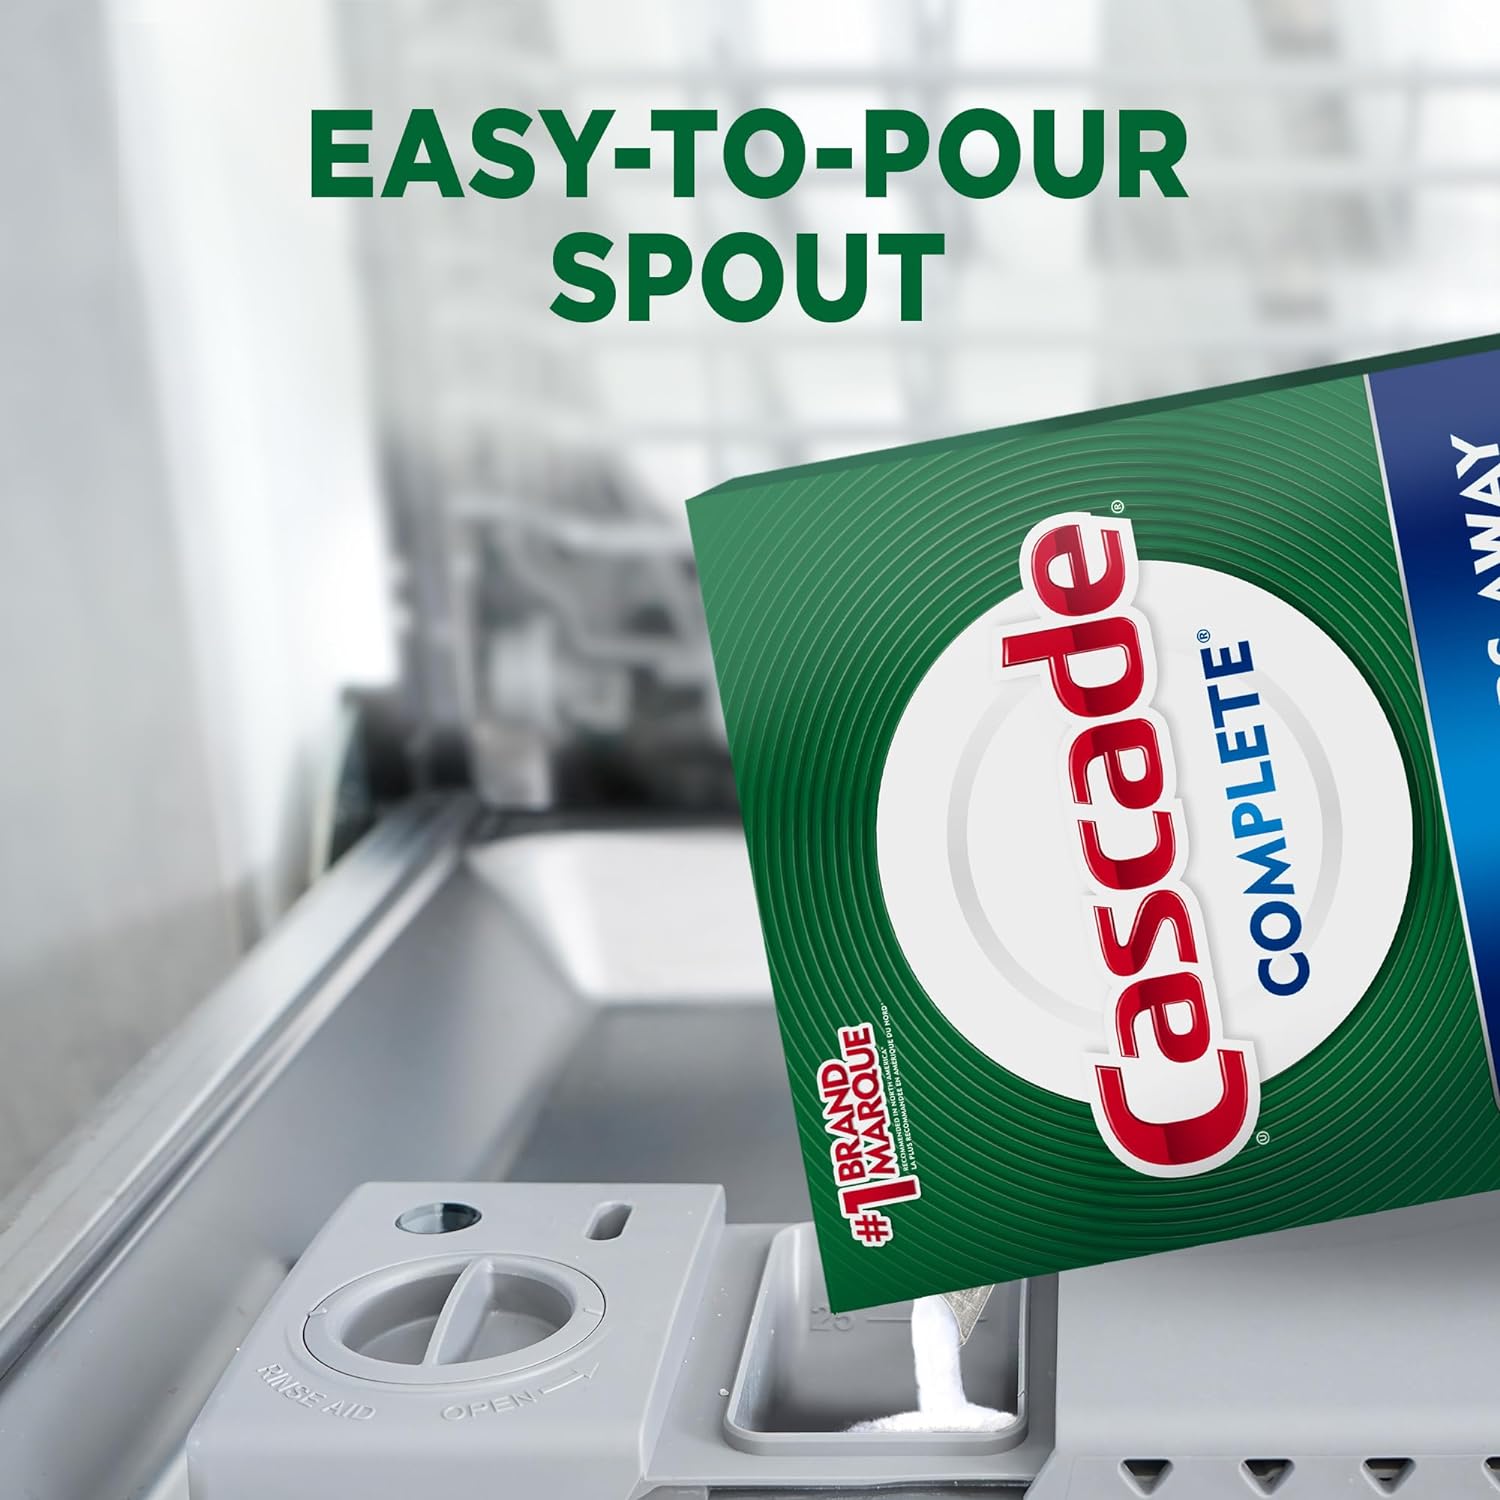 Cascade Complete Powder Dishwasher Detergent, Fresh Scent, 75 oz, White : Health & Household